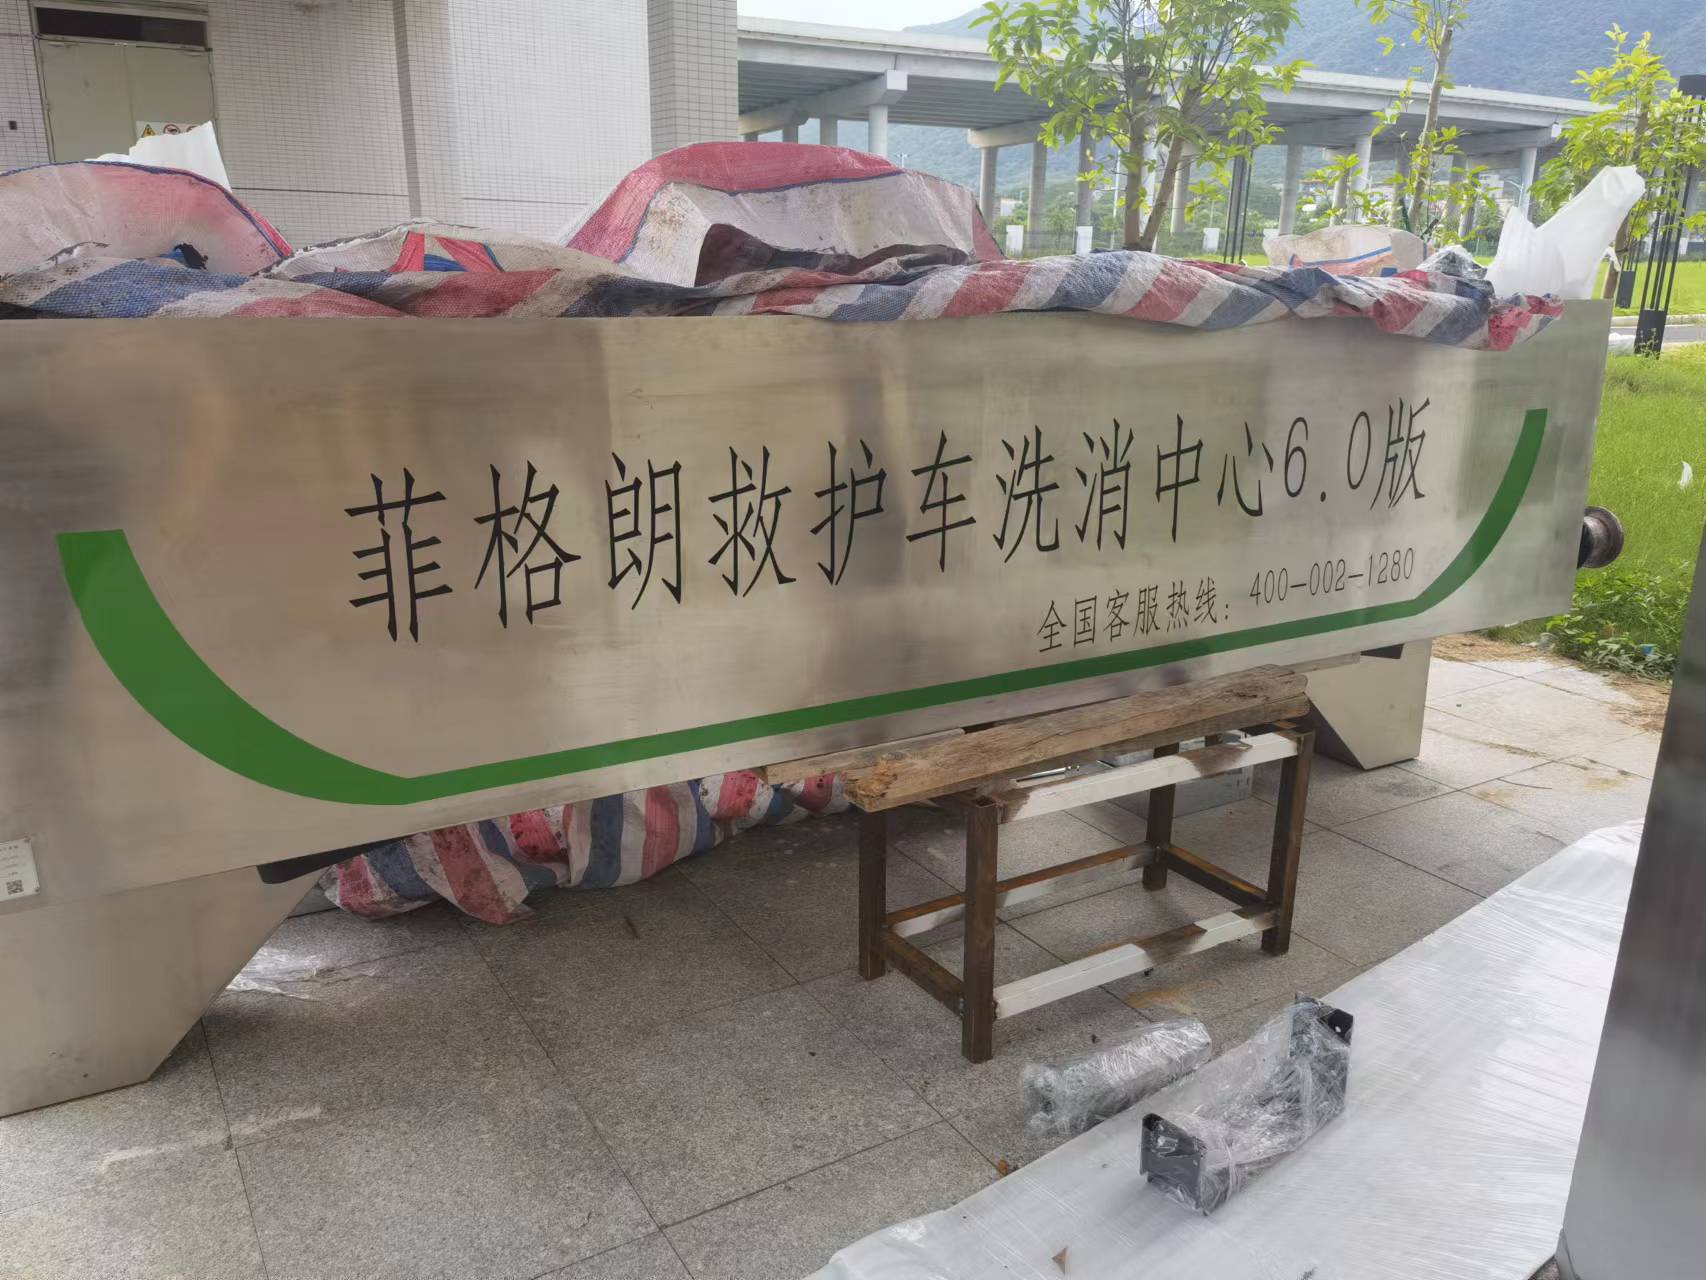 广东省妇幼保健院菲格朗救护车洗消中心系统投入使用插图3